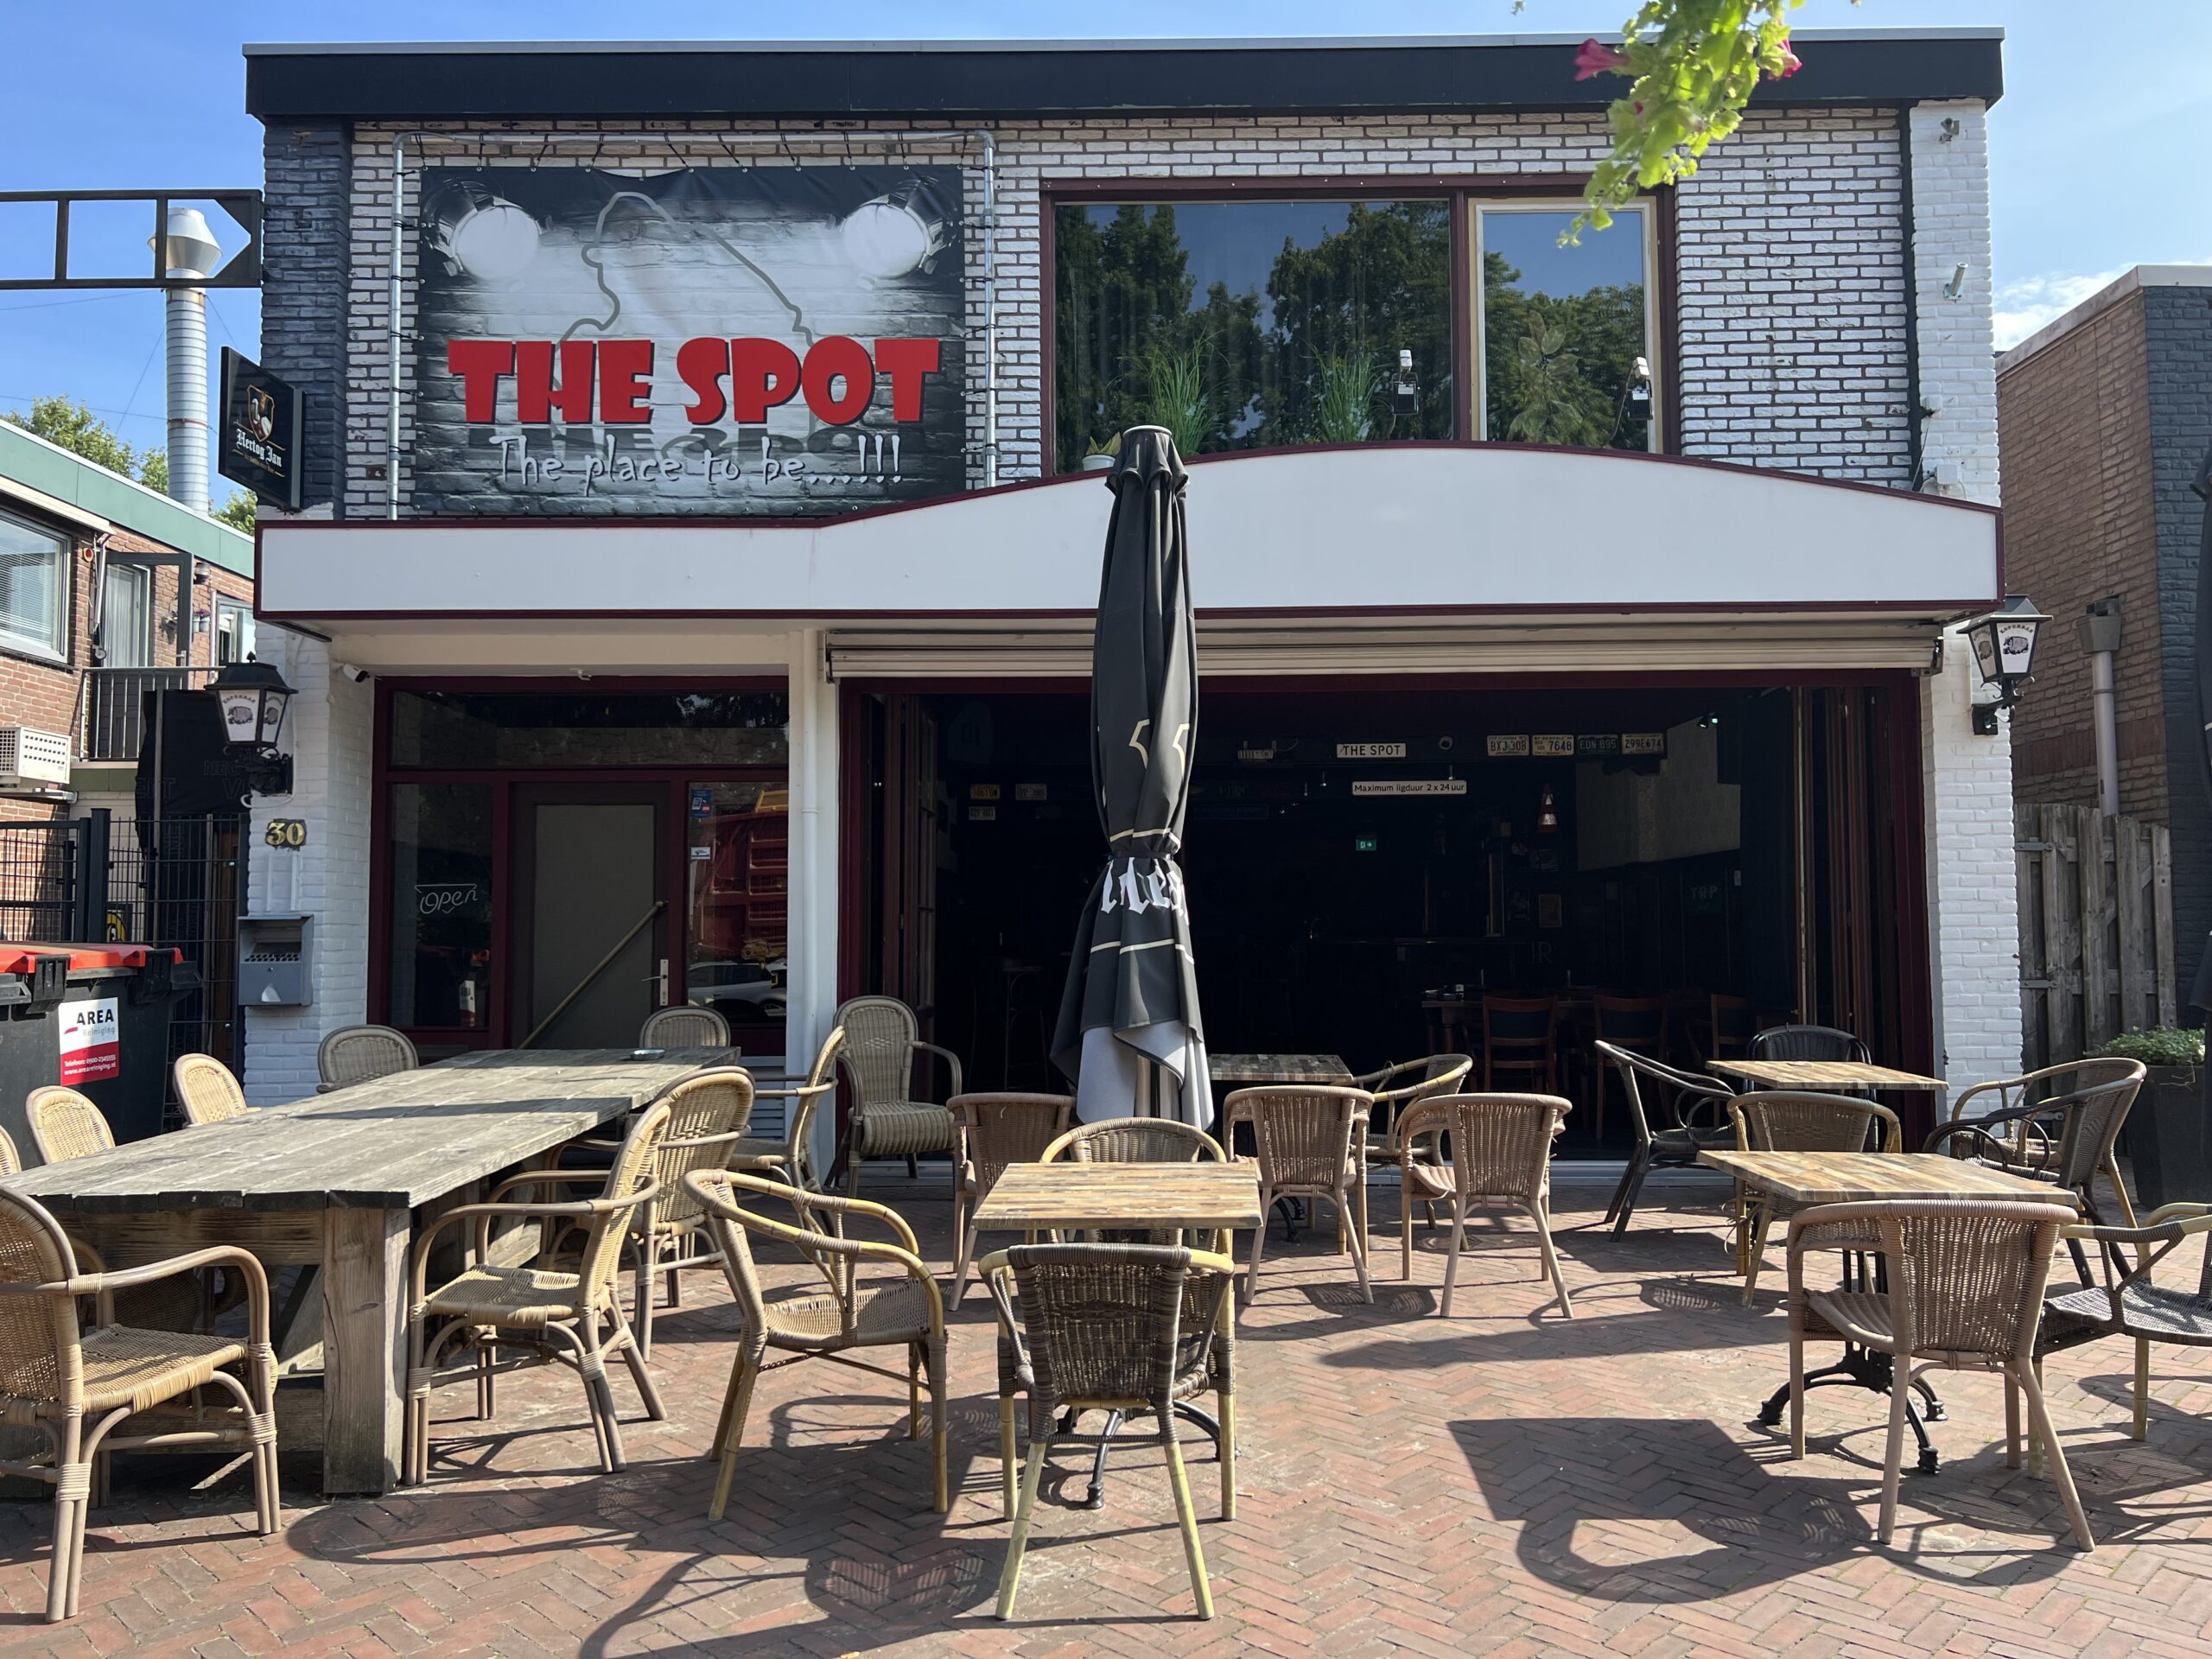 Café The Spot, horeca pand met woning te koop in het centrum van Erica Drenthe